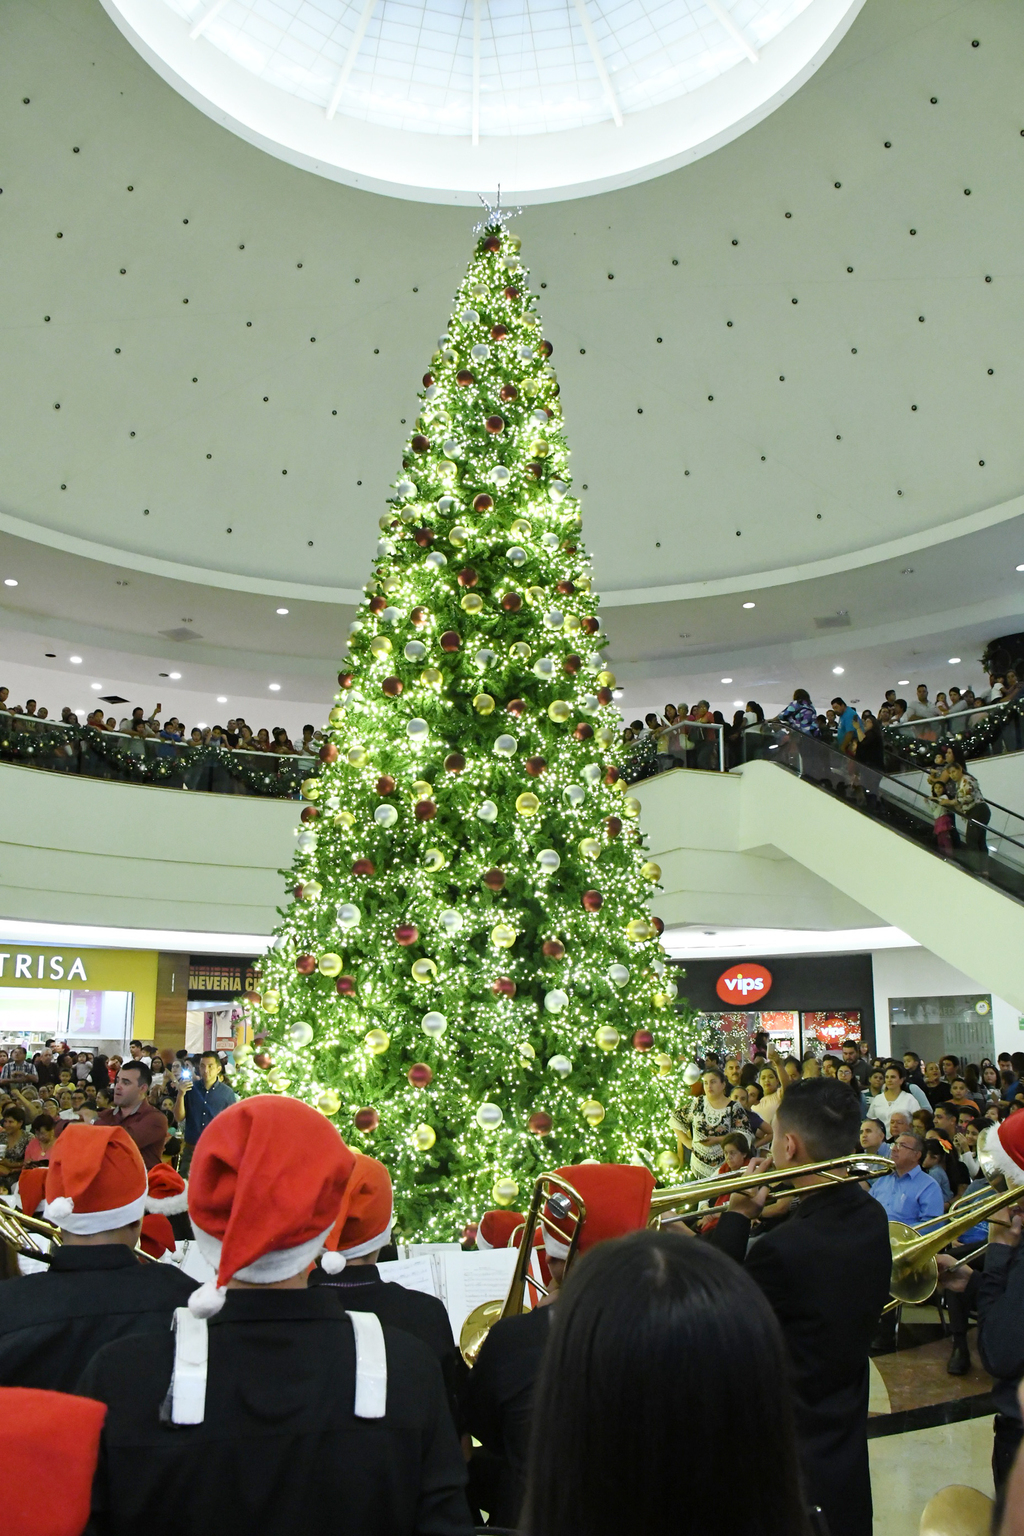 El gran pino navideño se encuentra en el atrio principal de la plaza.